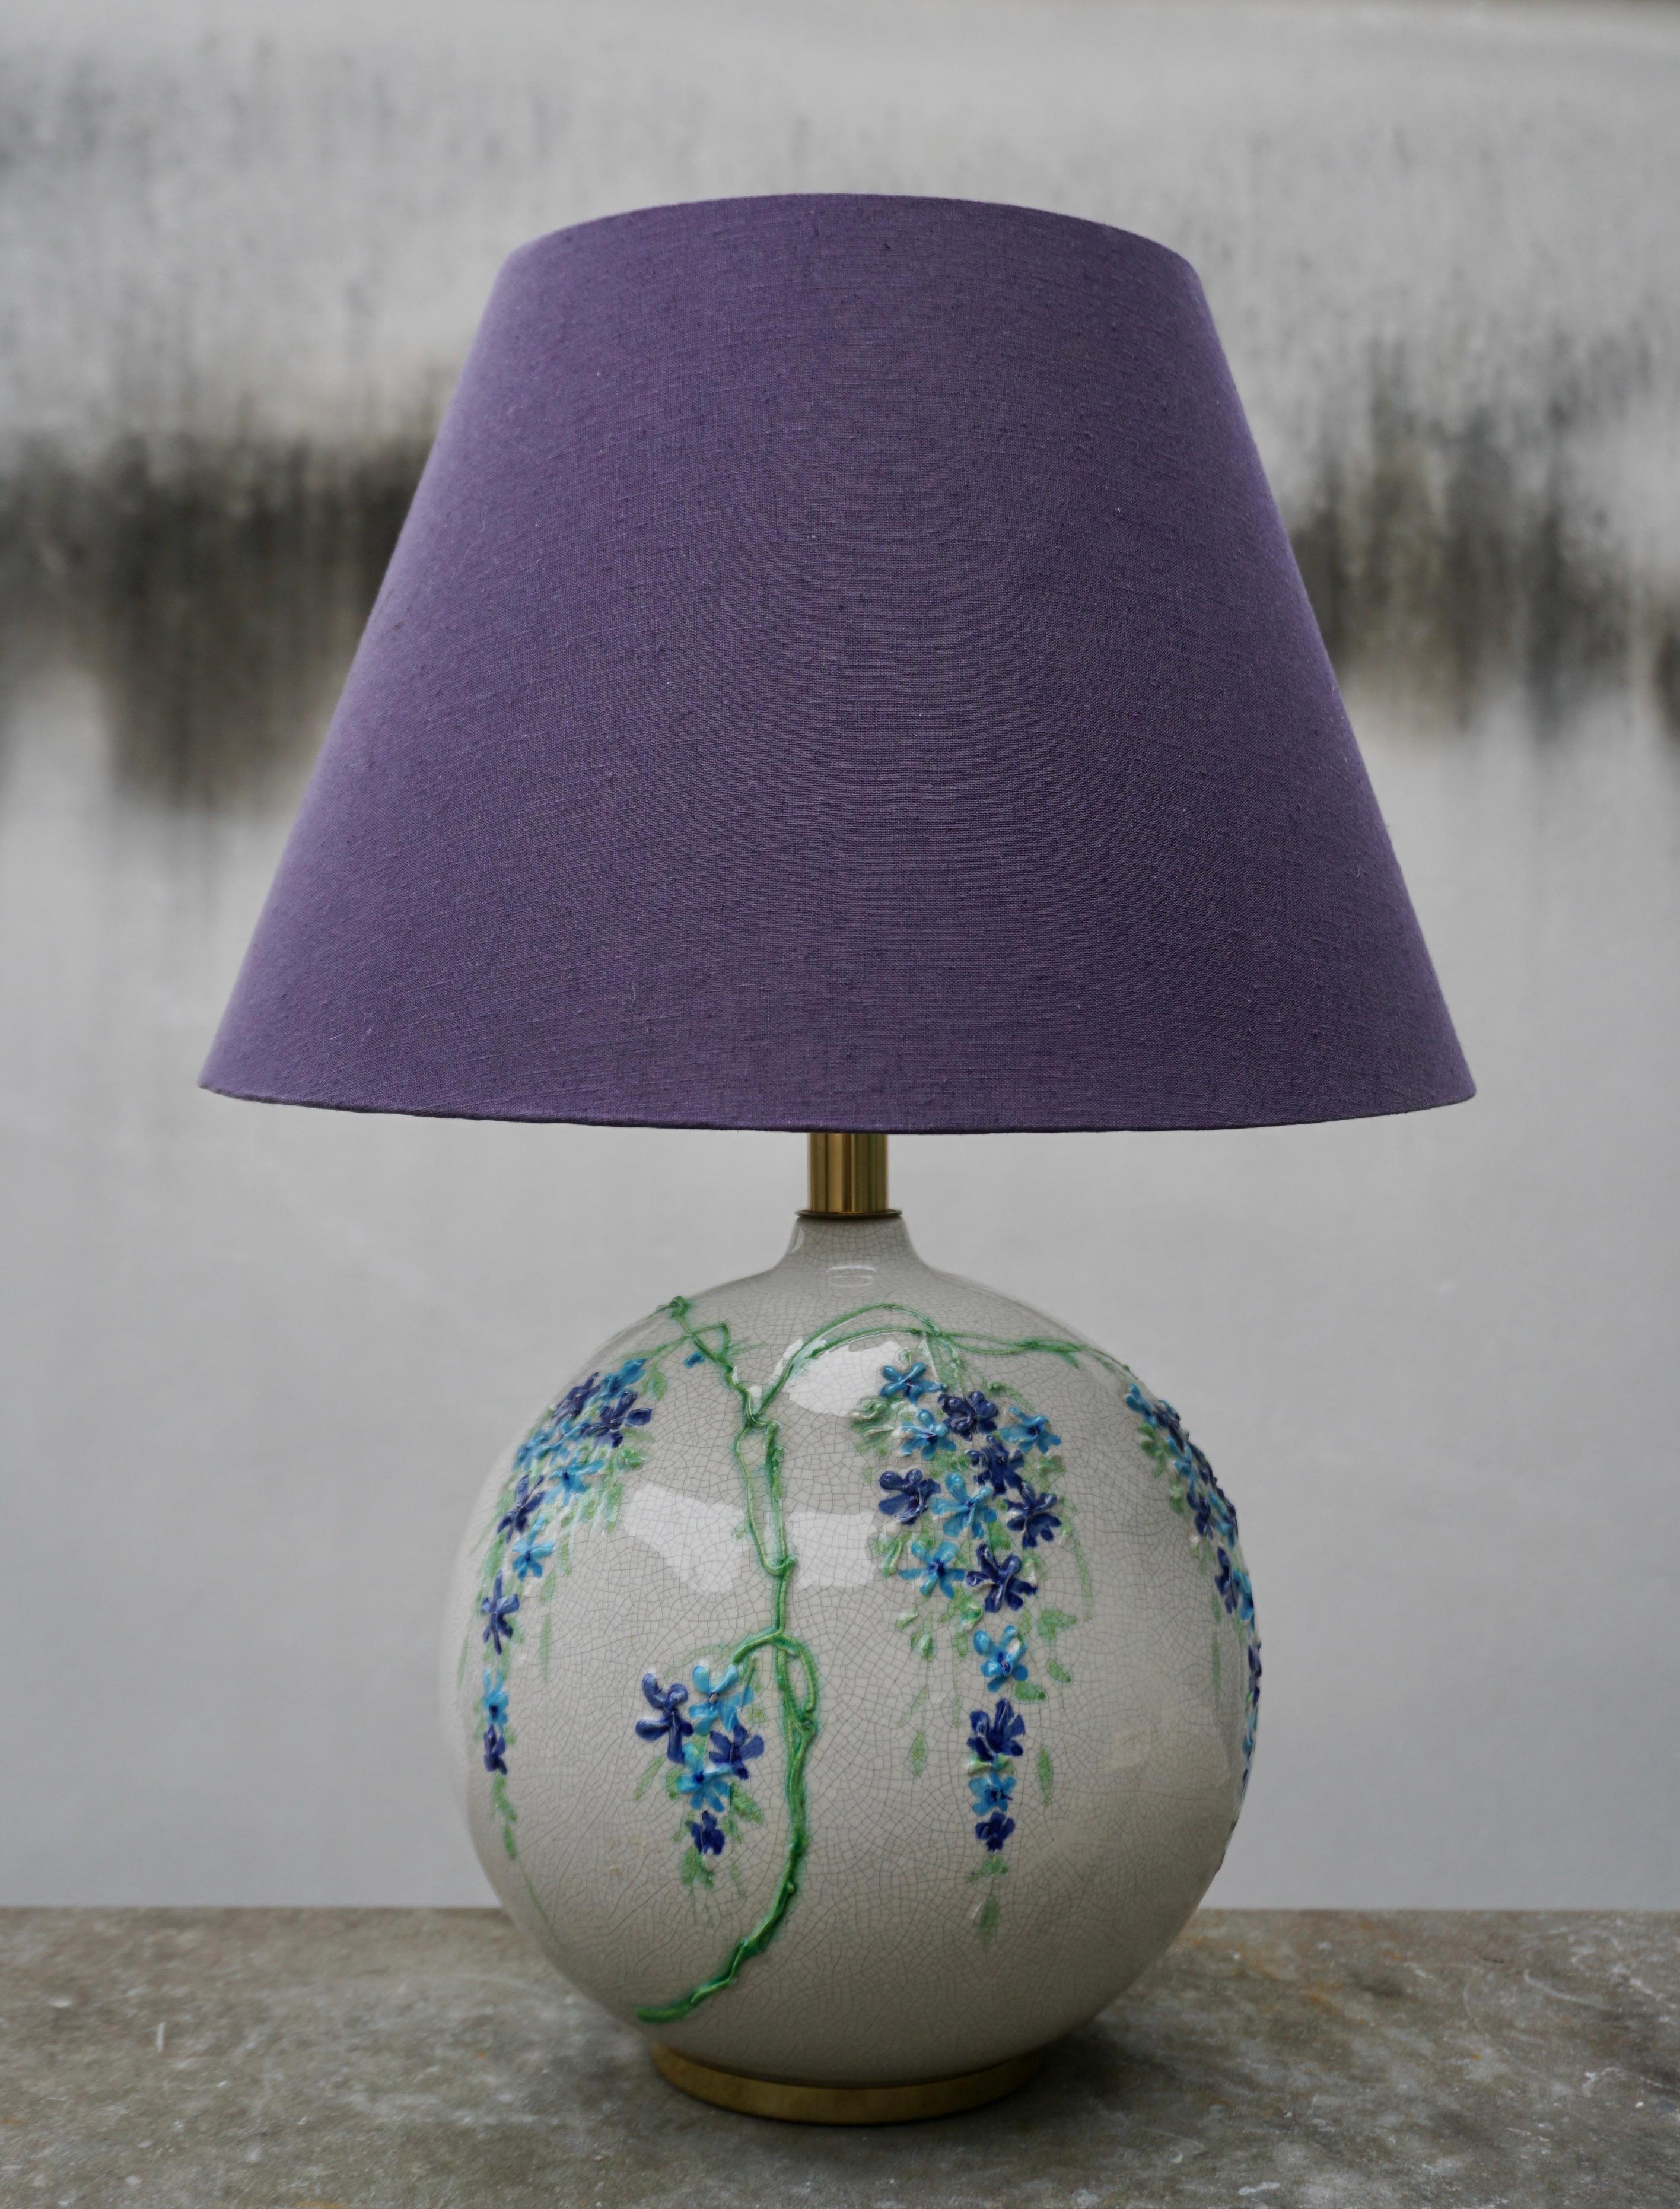 Questa elegante lampada da tavolo è stata disegnata da Alvino Bagni e prodotta dalla sua azienda Bagni in Italia negli anni Settanta. La forma sferica in ceramica smaltata è stata realizzata interamente a mano su un tornio. Nuovo paralume